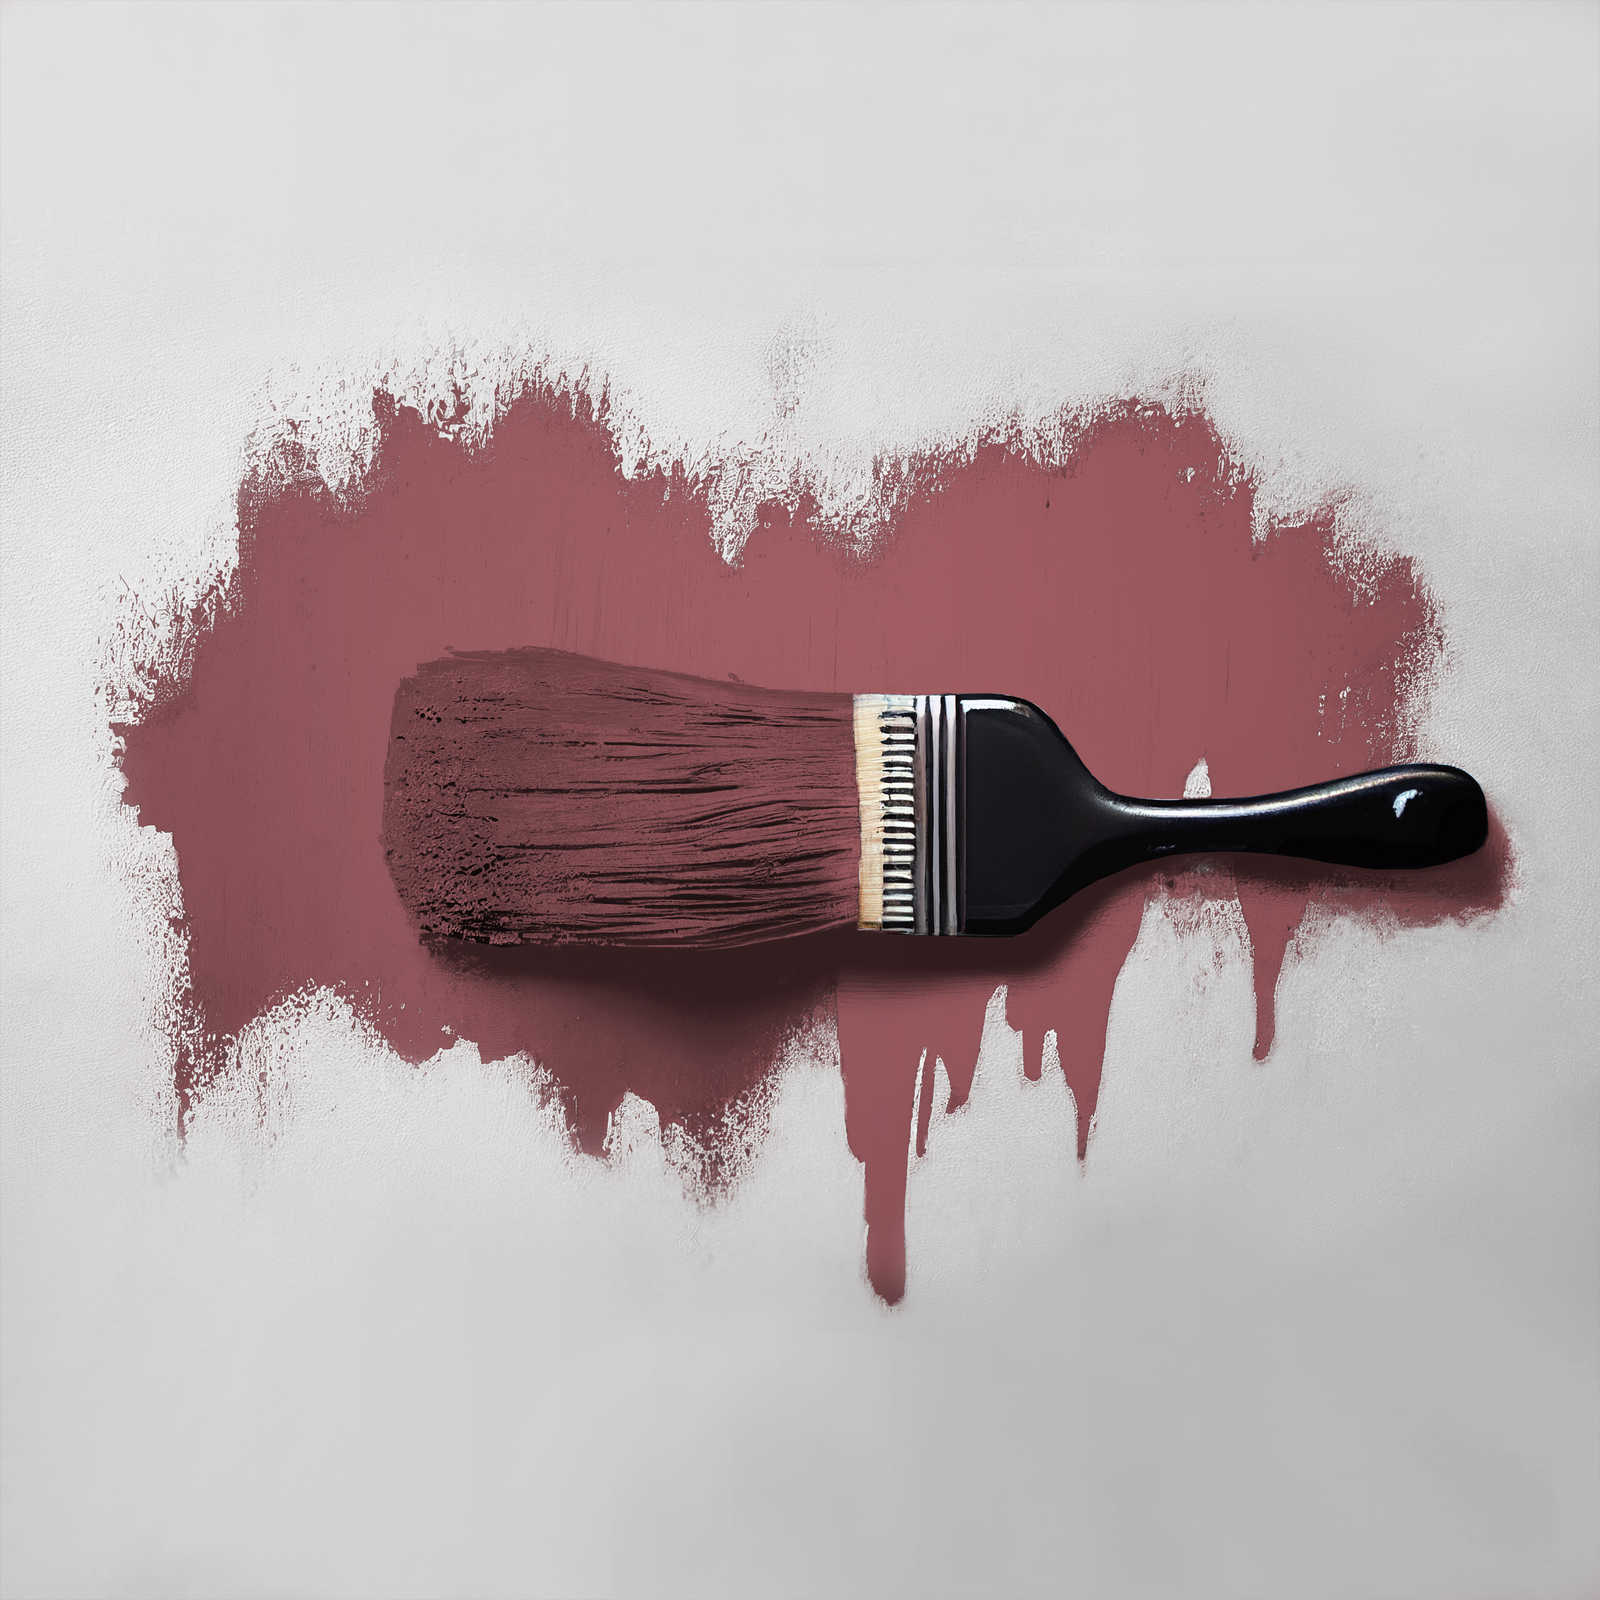             Pittura murale TCK7012 »Sweet Marmelade« in autentica tonalità berry – 5,0 litri
        